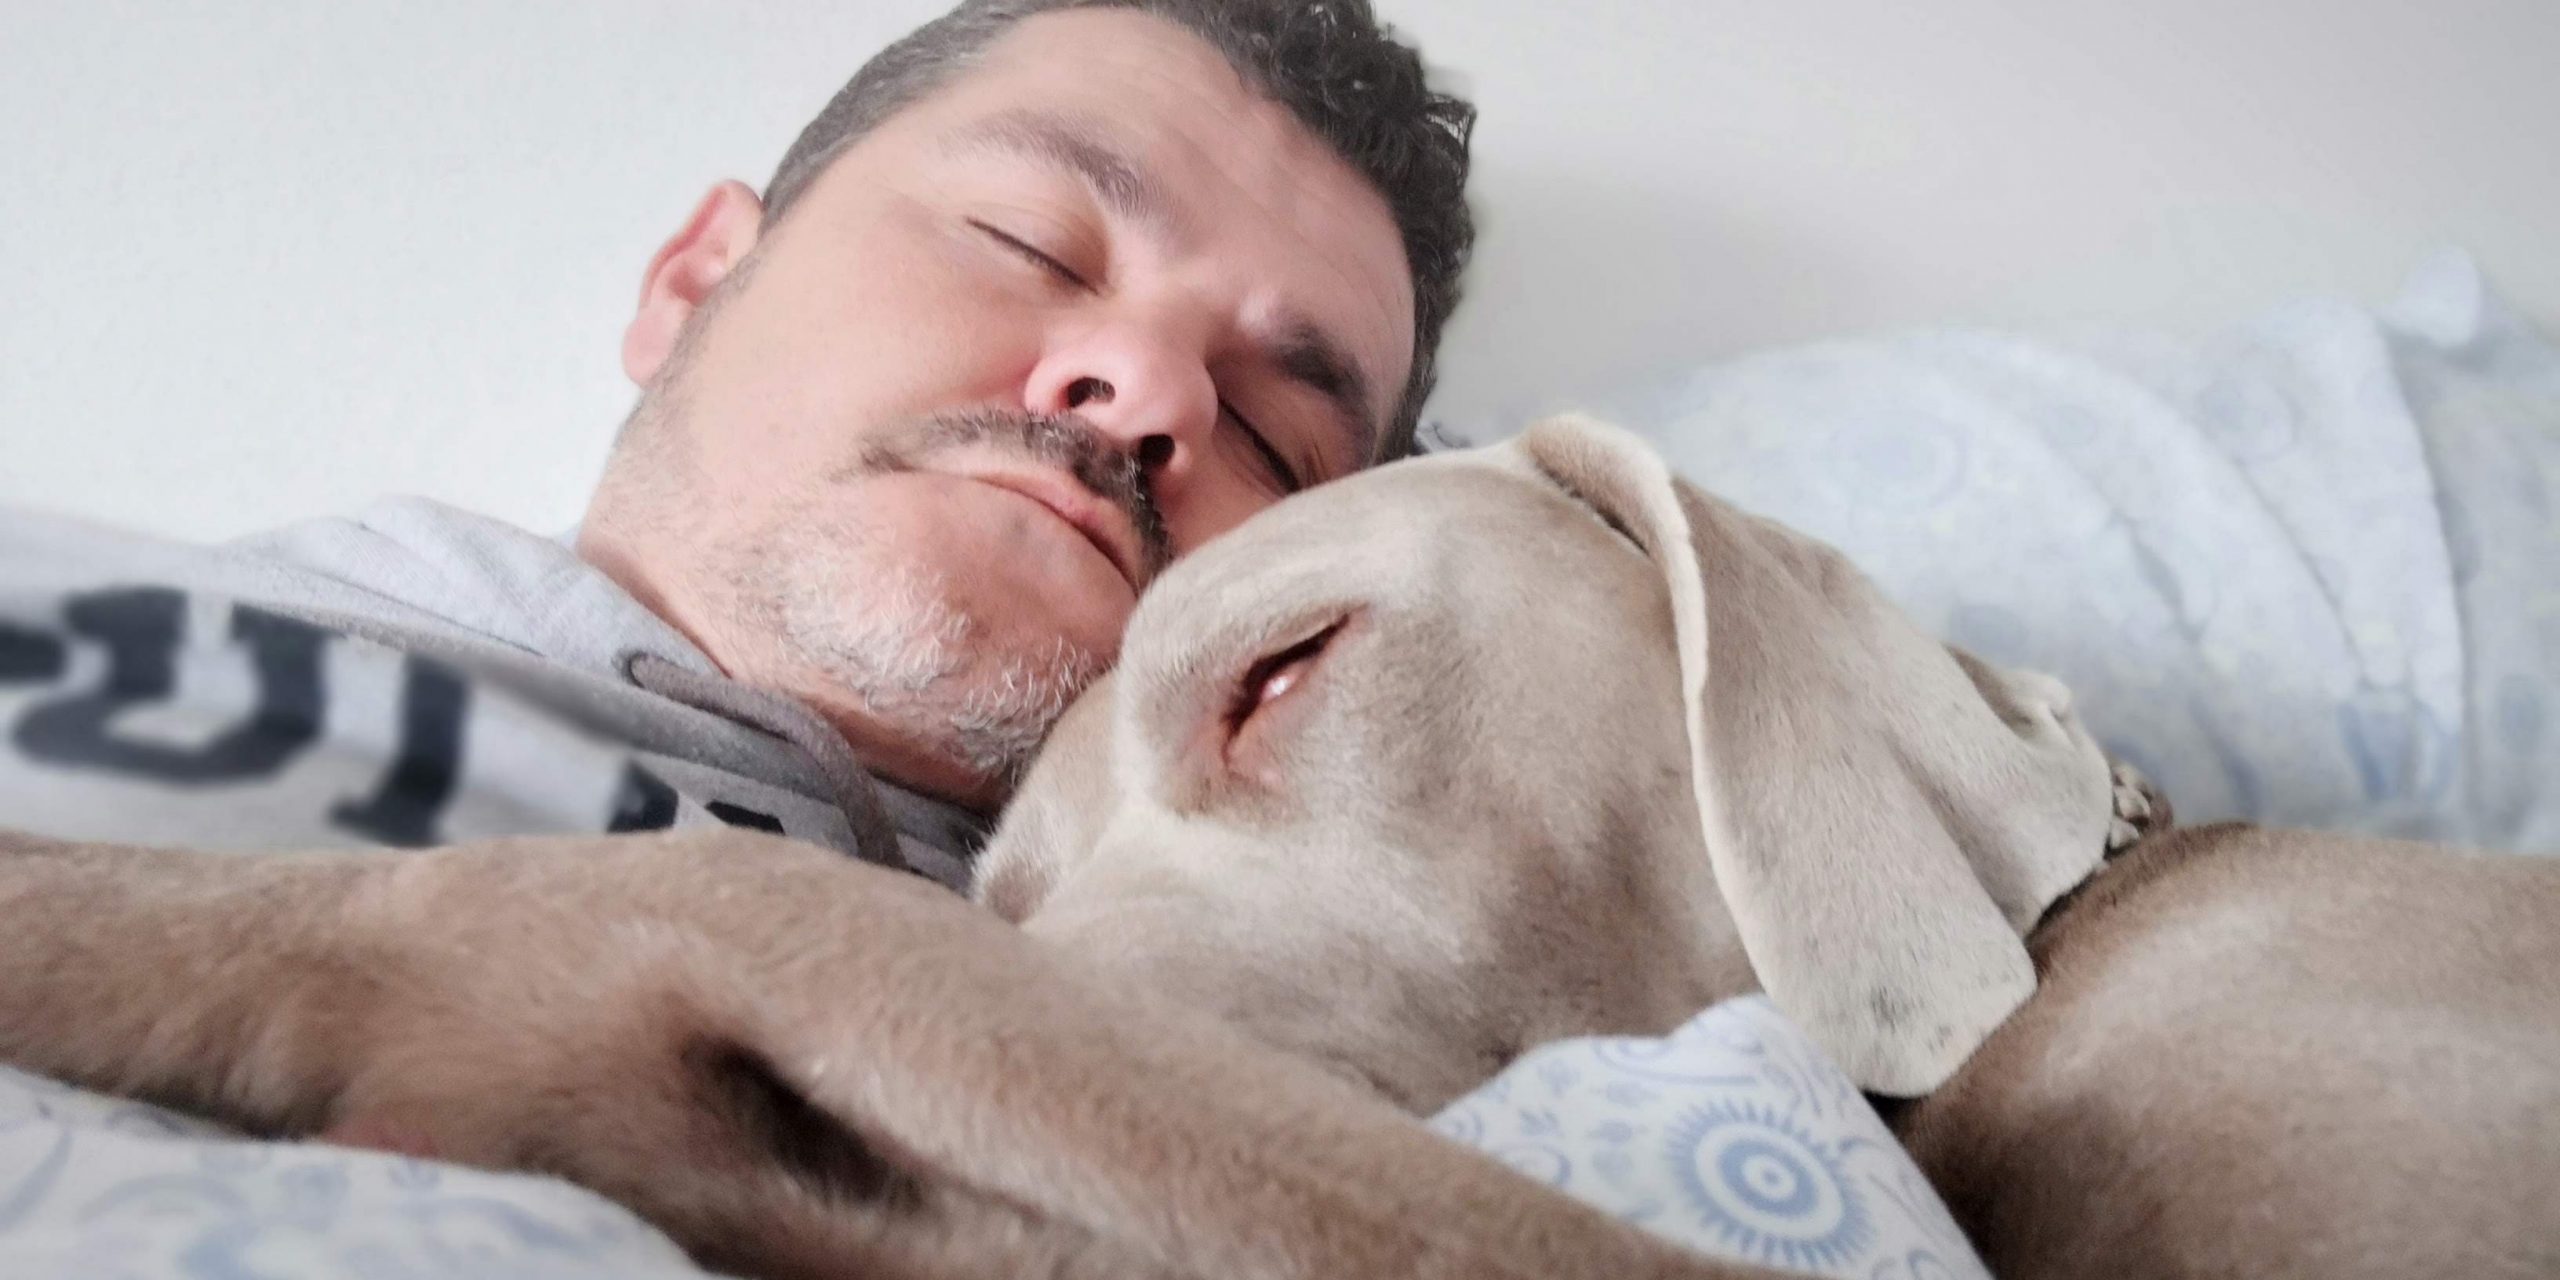 Mies nukkuu vaalea koira kainalossaan.